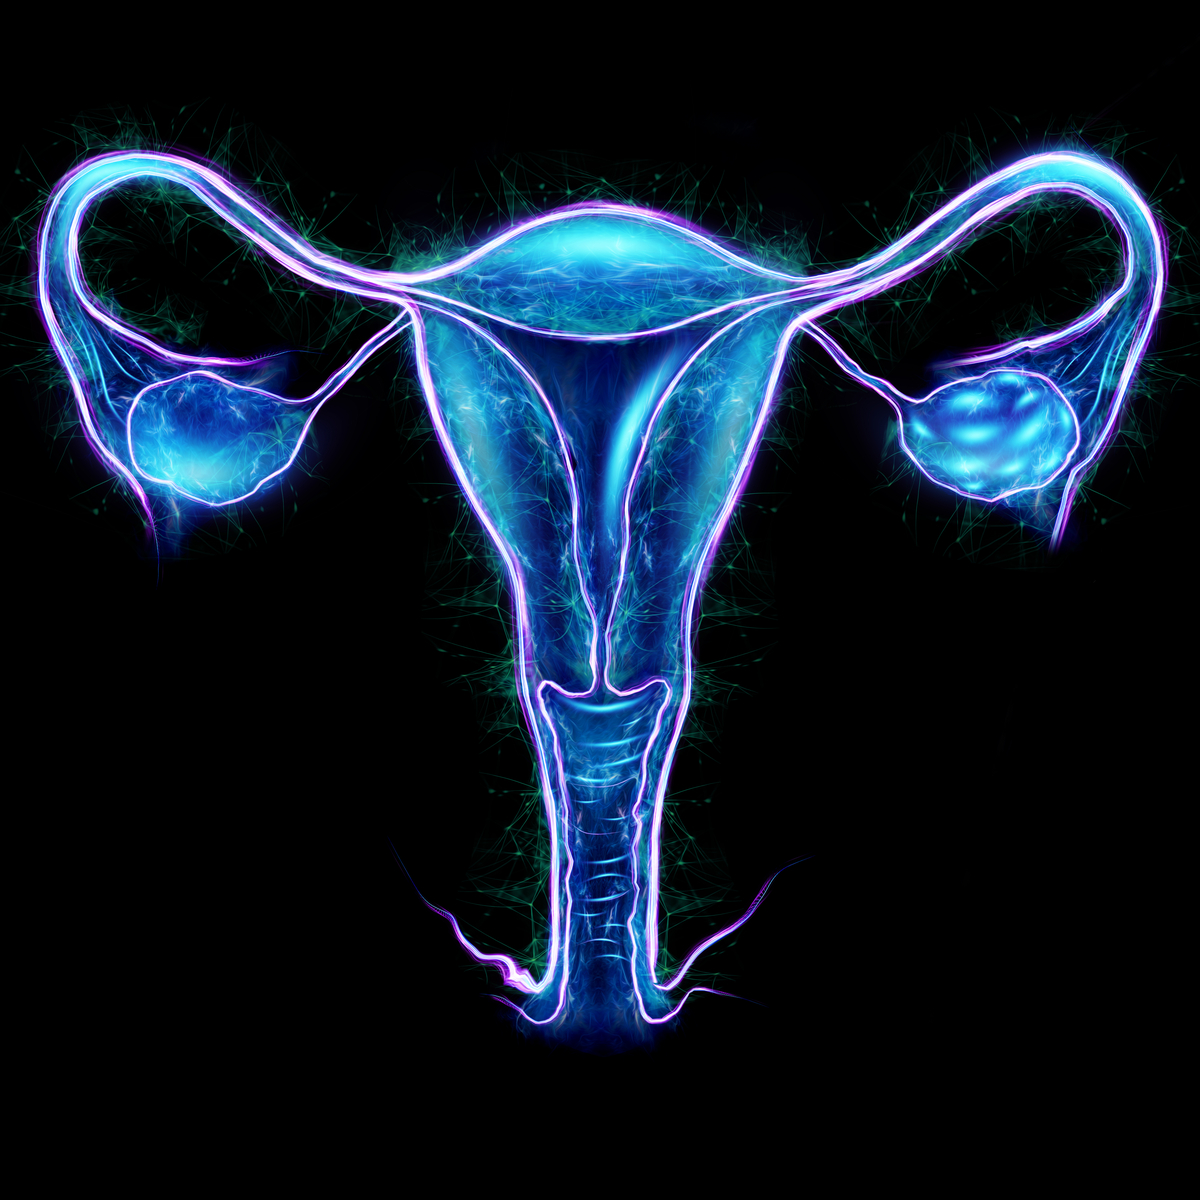 Un estudio sueco constata que el trasplante de útero es seguro y eficaz contra la infertilidad